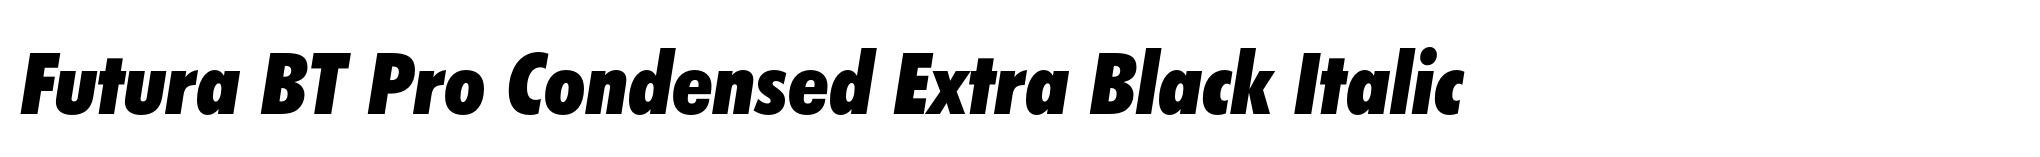 Futura BT Pro Condensed Extra Black Italic image